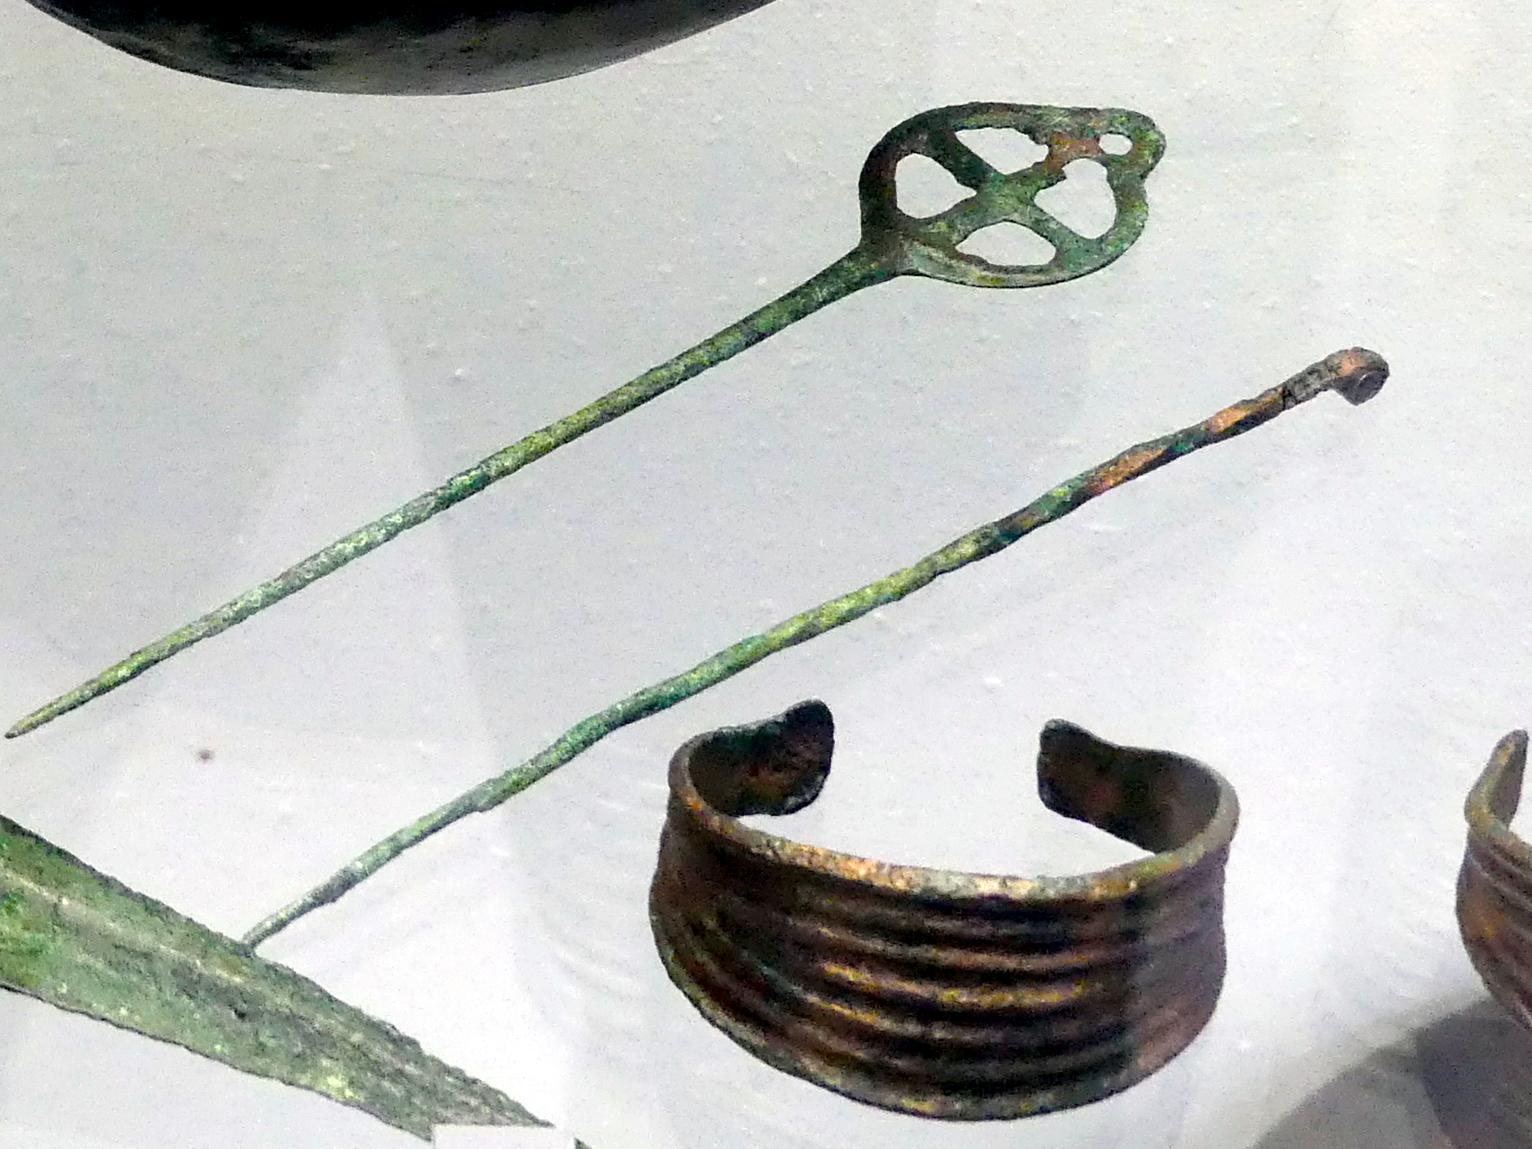 Tordierte Rollenkopfnadel, Mittlere Bronzezeit C1, 1500 - 1400 v. Chr., Bild 1/2